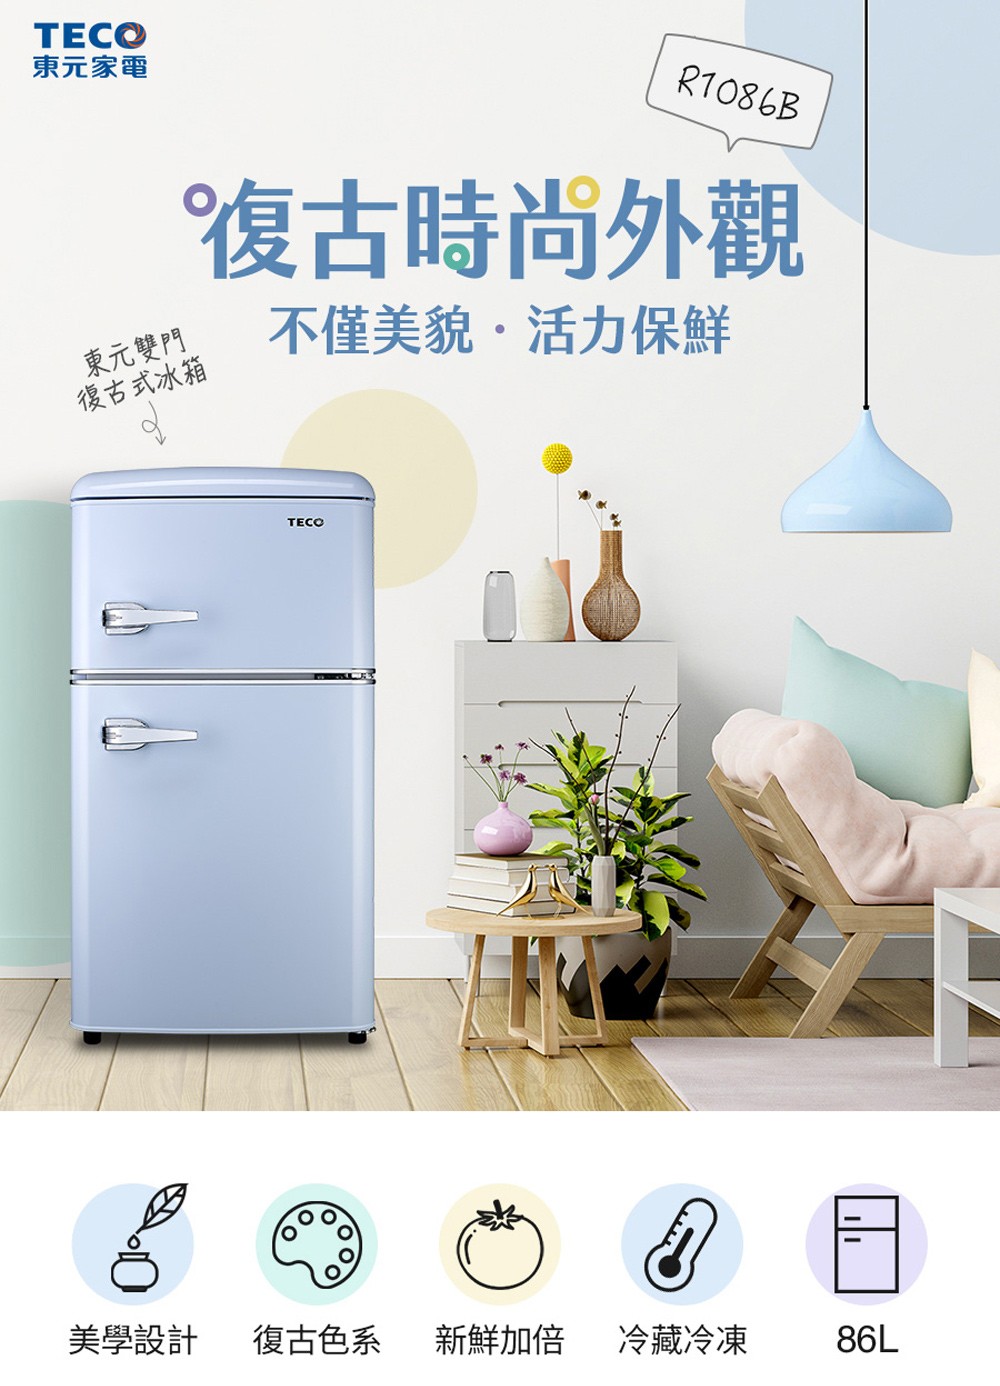 TECO 東元 86公升 一級能效定頻右開雙門復古式冰箱 (R1086B)